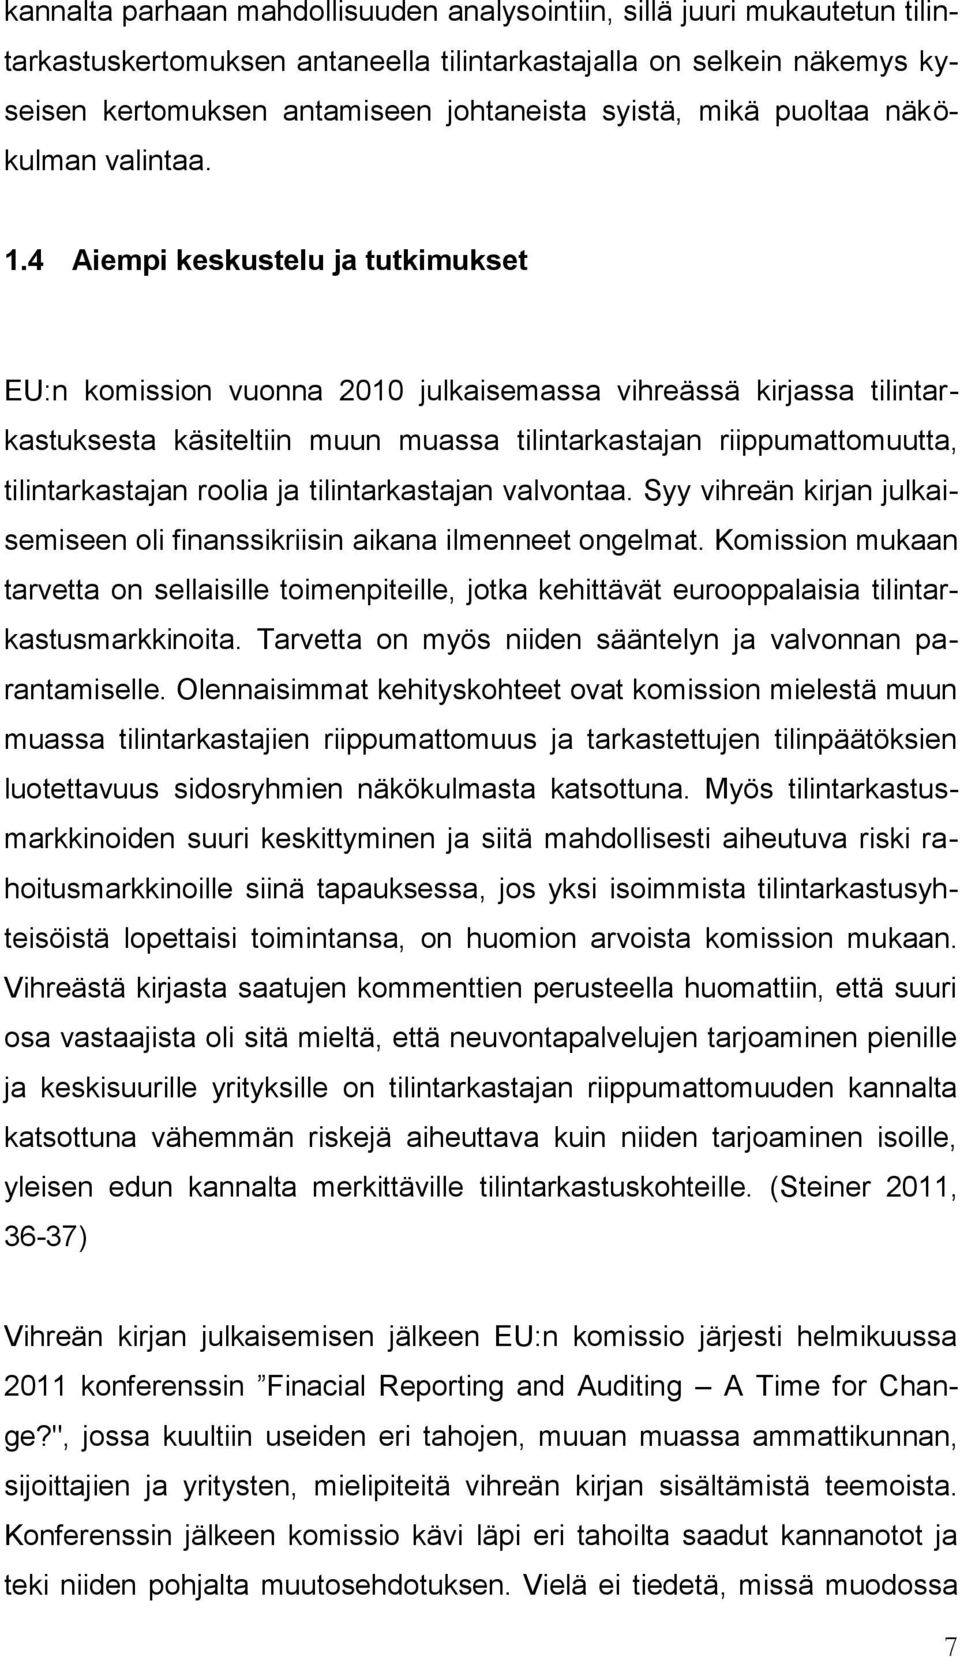 4 Aiempi keskustelu ja tutkimukset EU:n komission vuonna 2010 julkaisemassa vihreässä kirjassa tilintarkastuksesta käsiteltiin muun muassa tilintarkastajan riippumattomuutta, tilintarkastajan roolia